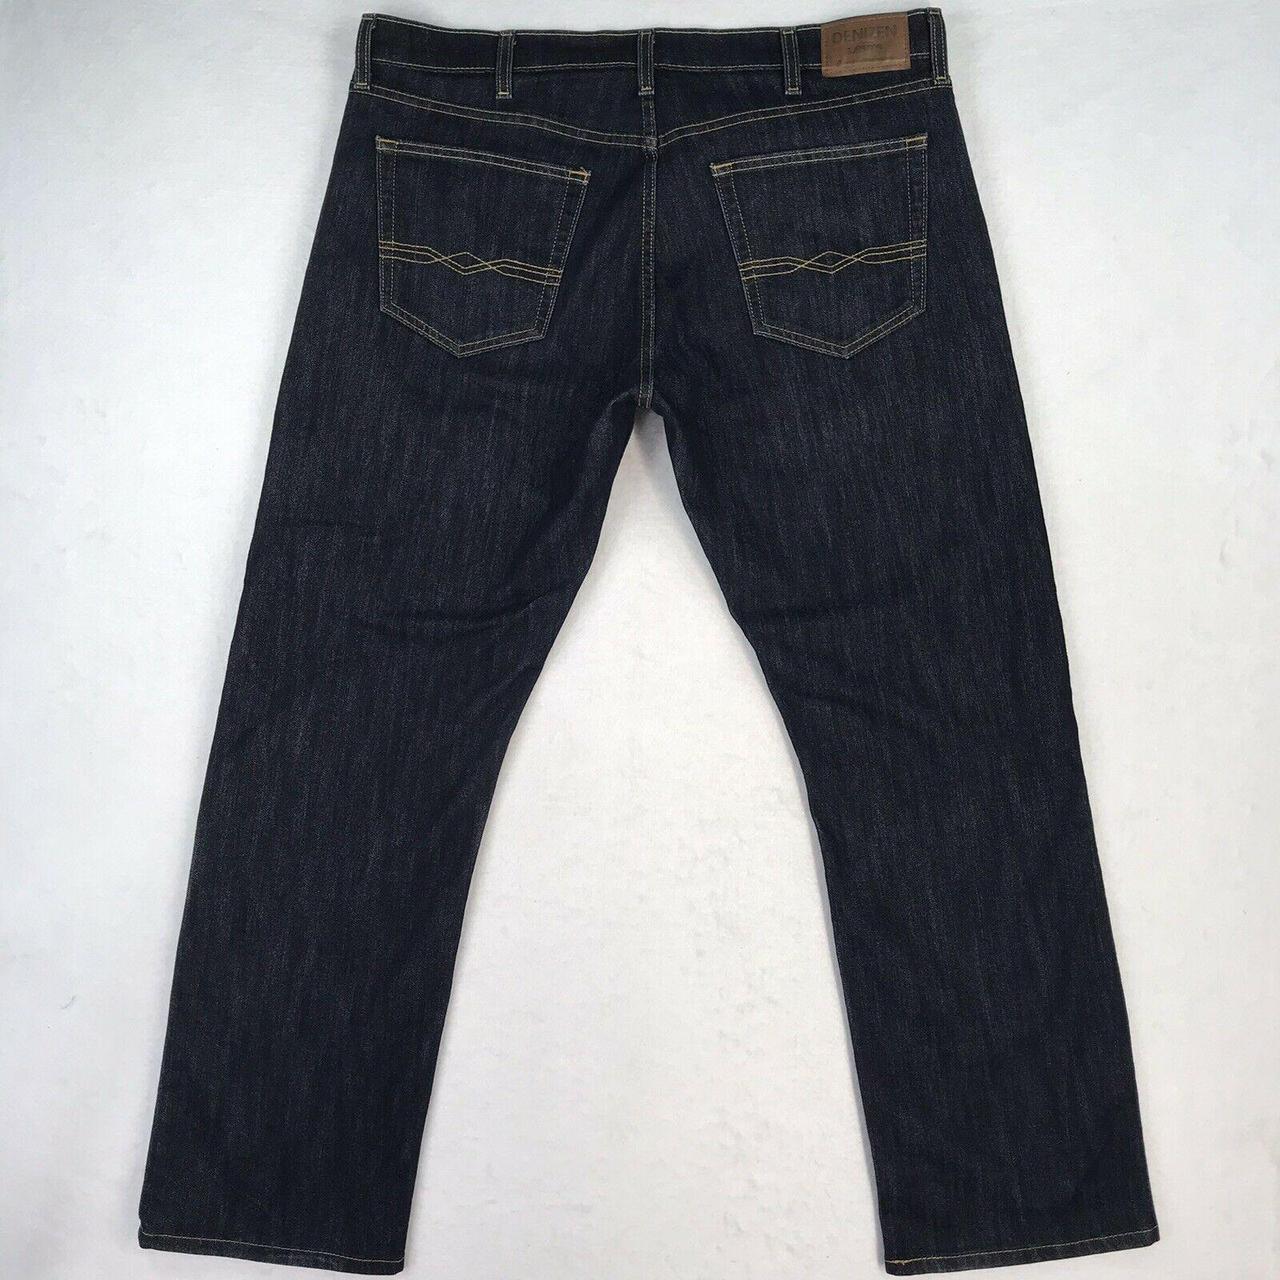 Levi's Denizen 218 Straight Fit 40x32 Blue Jeans... - Depop